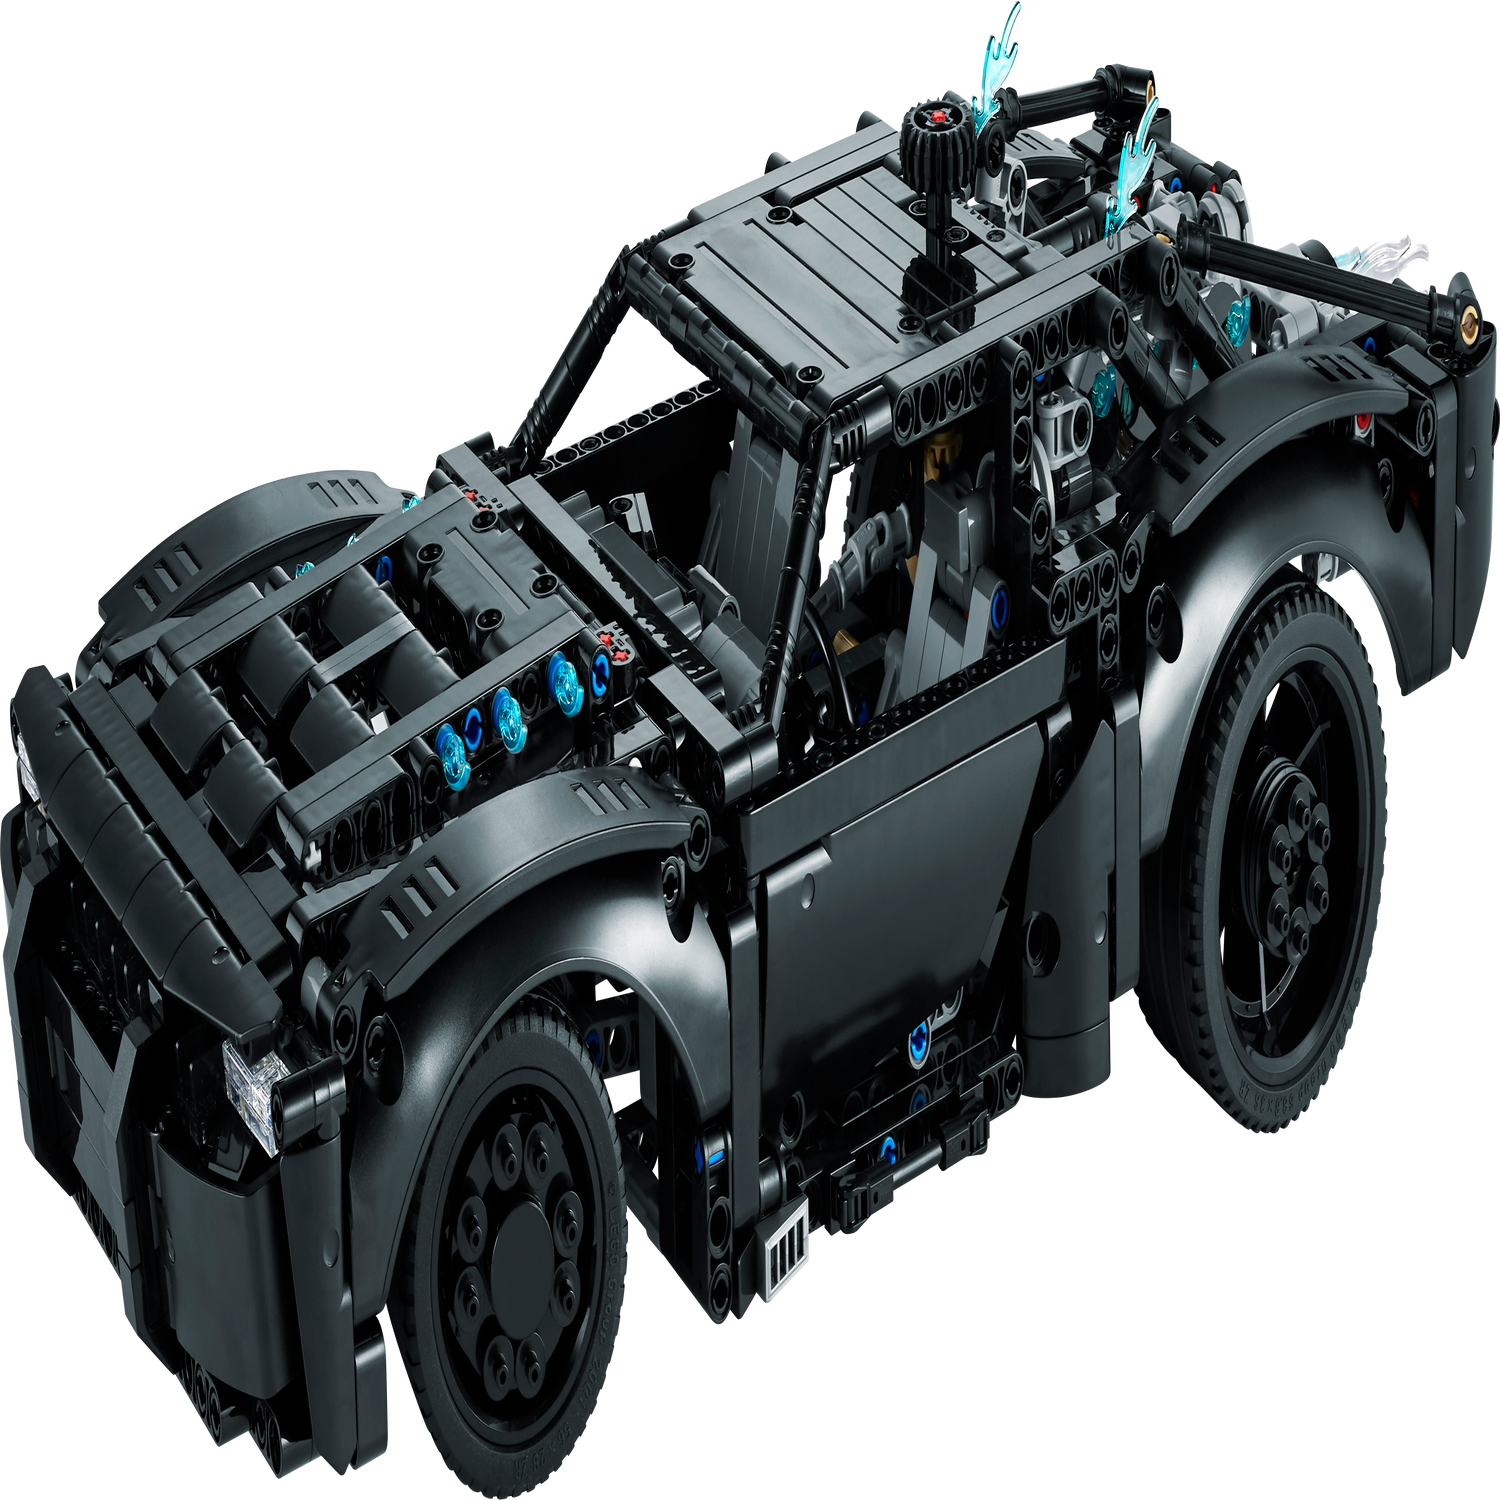 La Batmobile™ de Batman 42127 | Technic | Boutique LEGO® officielle FR